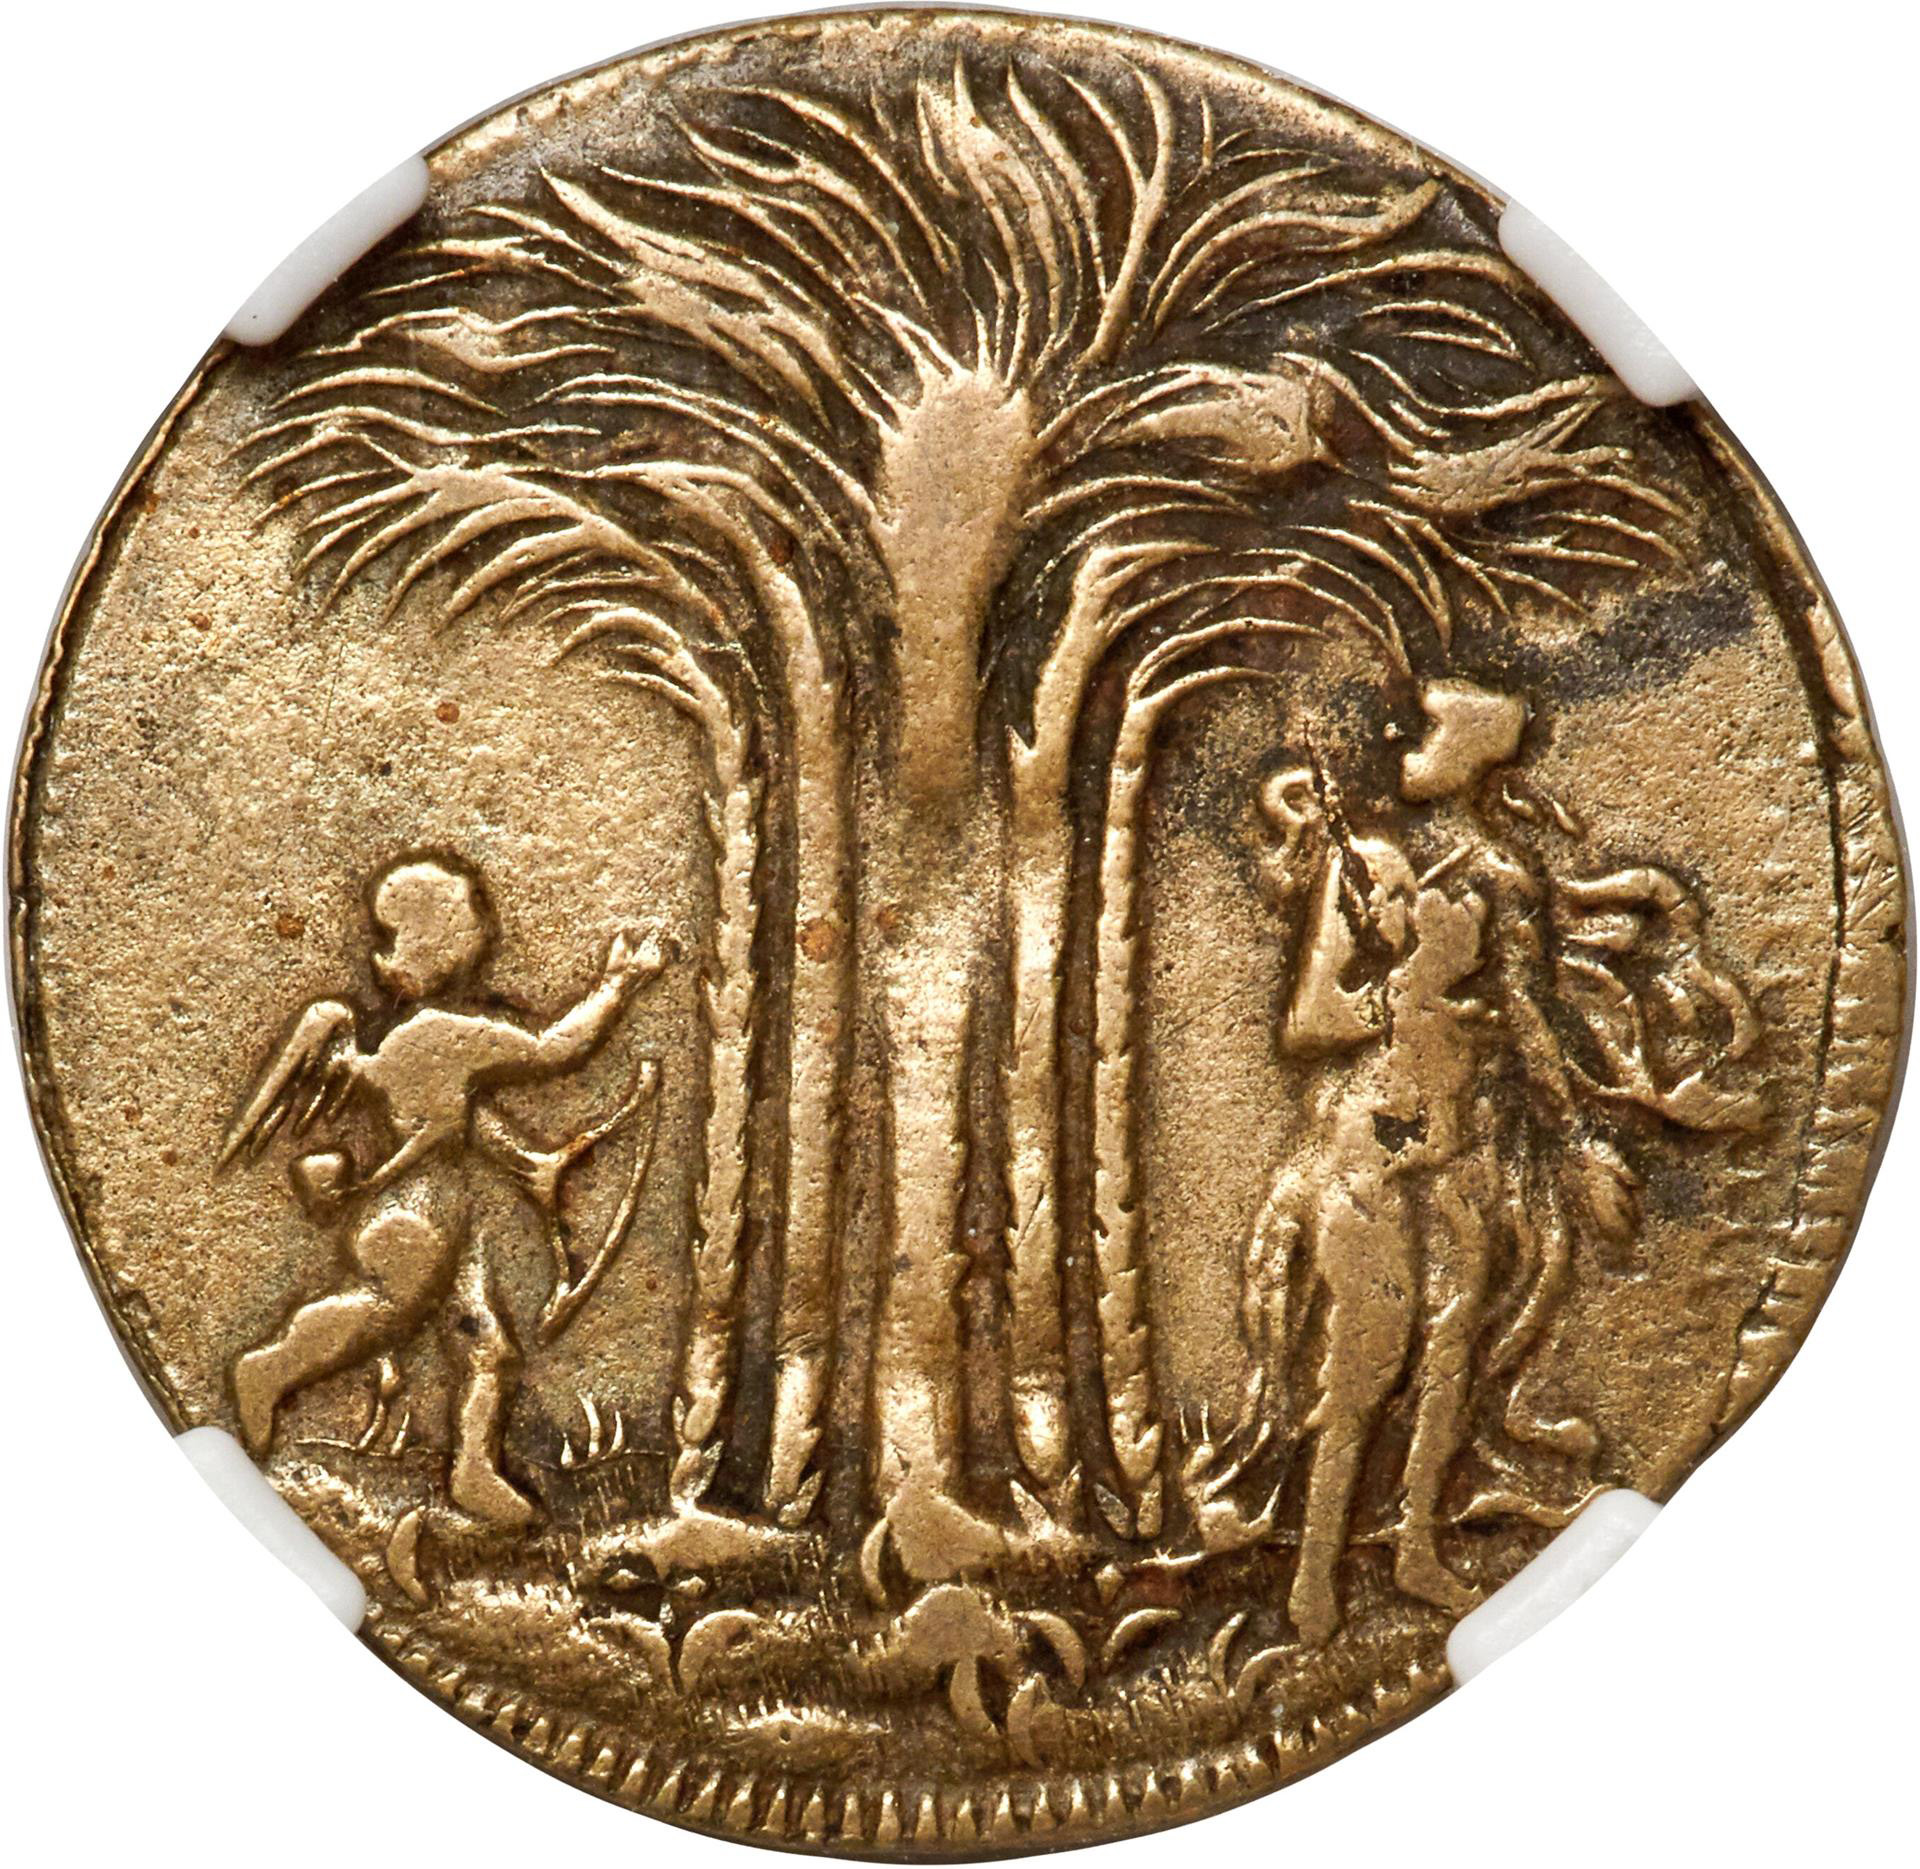 NEW YORKE BRASS TOKEN  Rare Coin Wholesalers, a S.L.Contursi Company